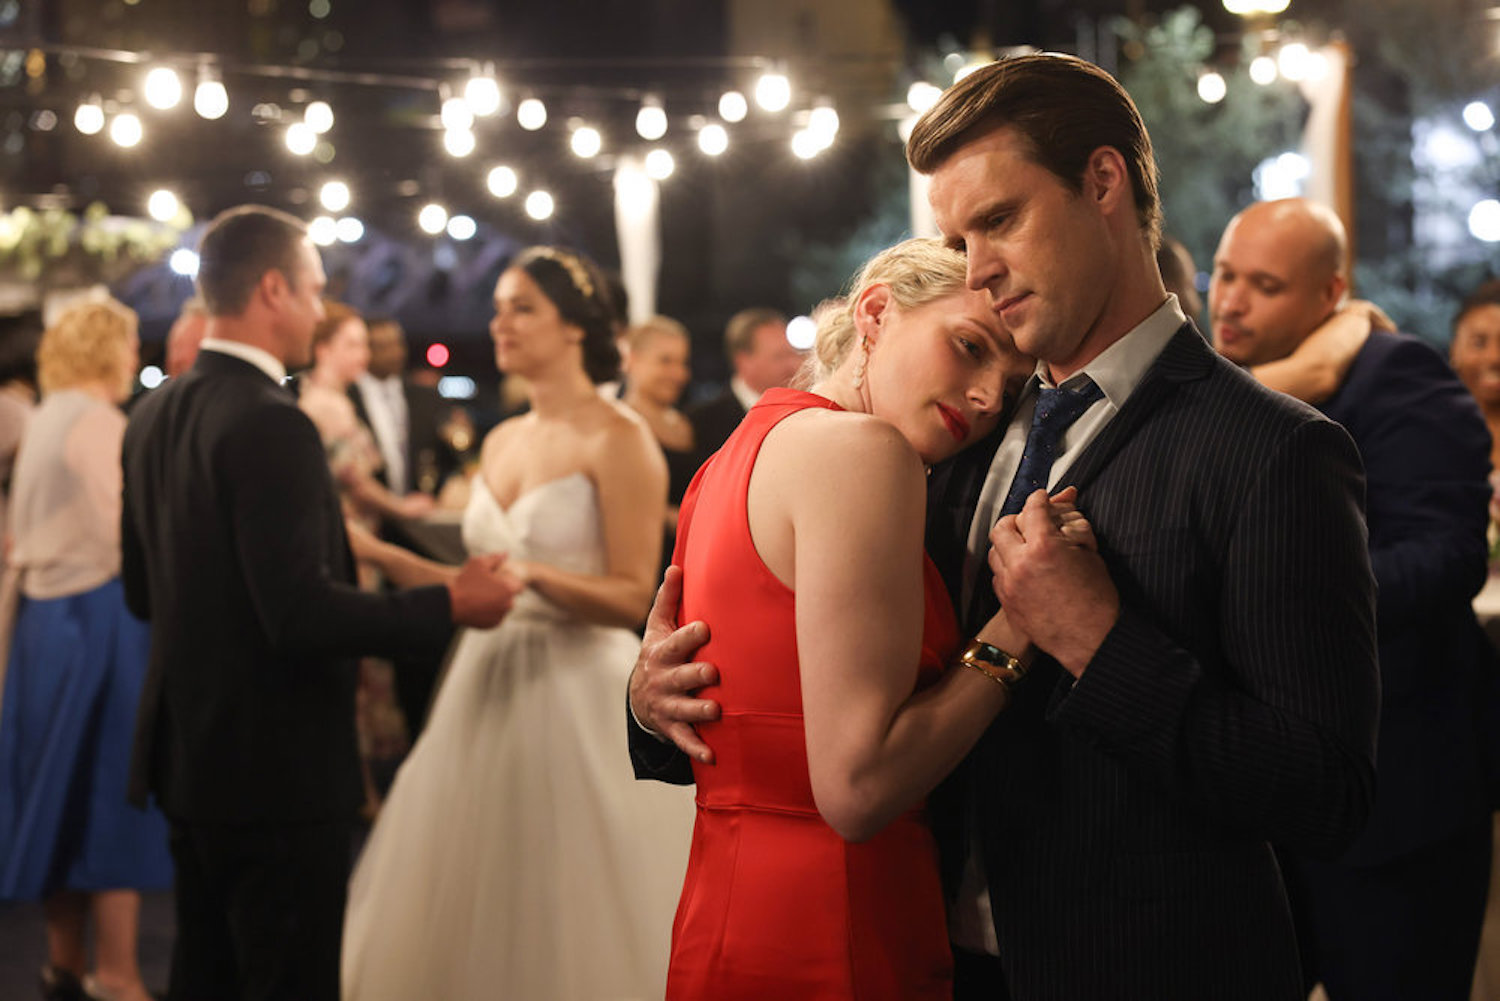 Sylvie Brett and Matt Casey in dancing in 'Chicago Fire' Season 10